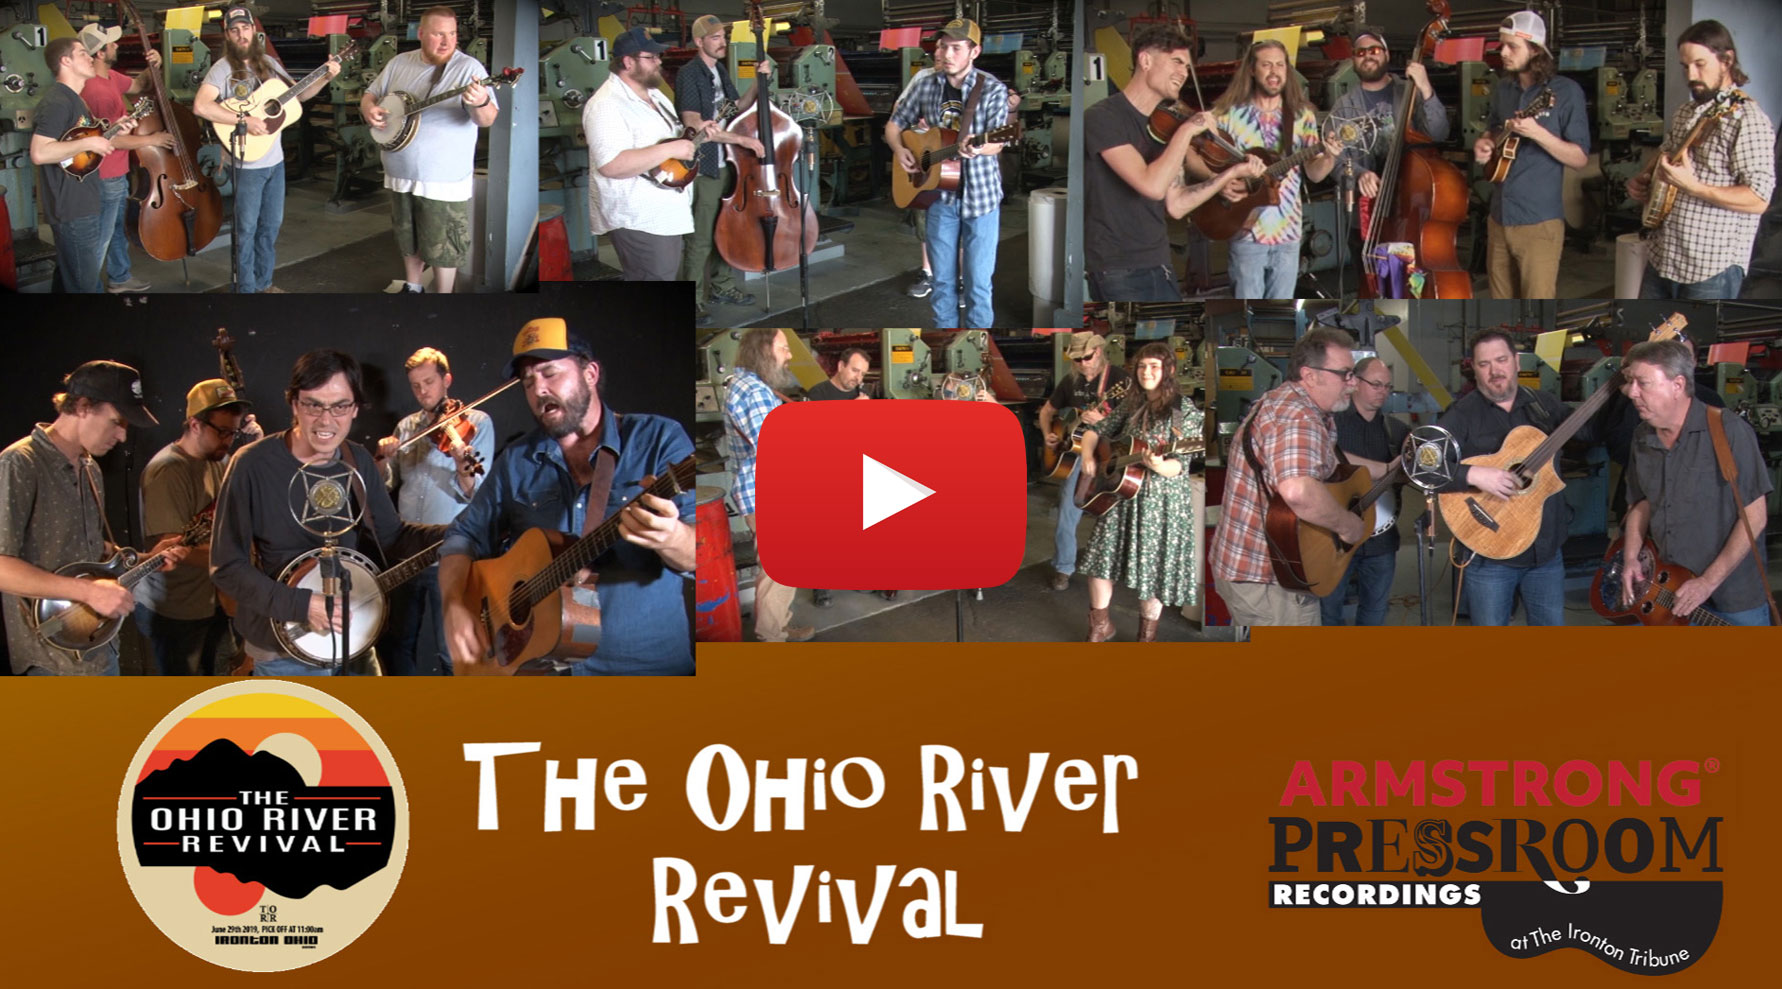 Press Room Recordings - The Ohio River Revival